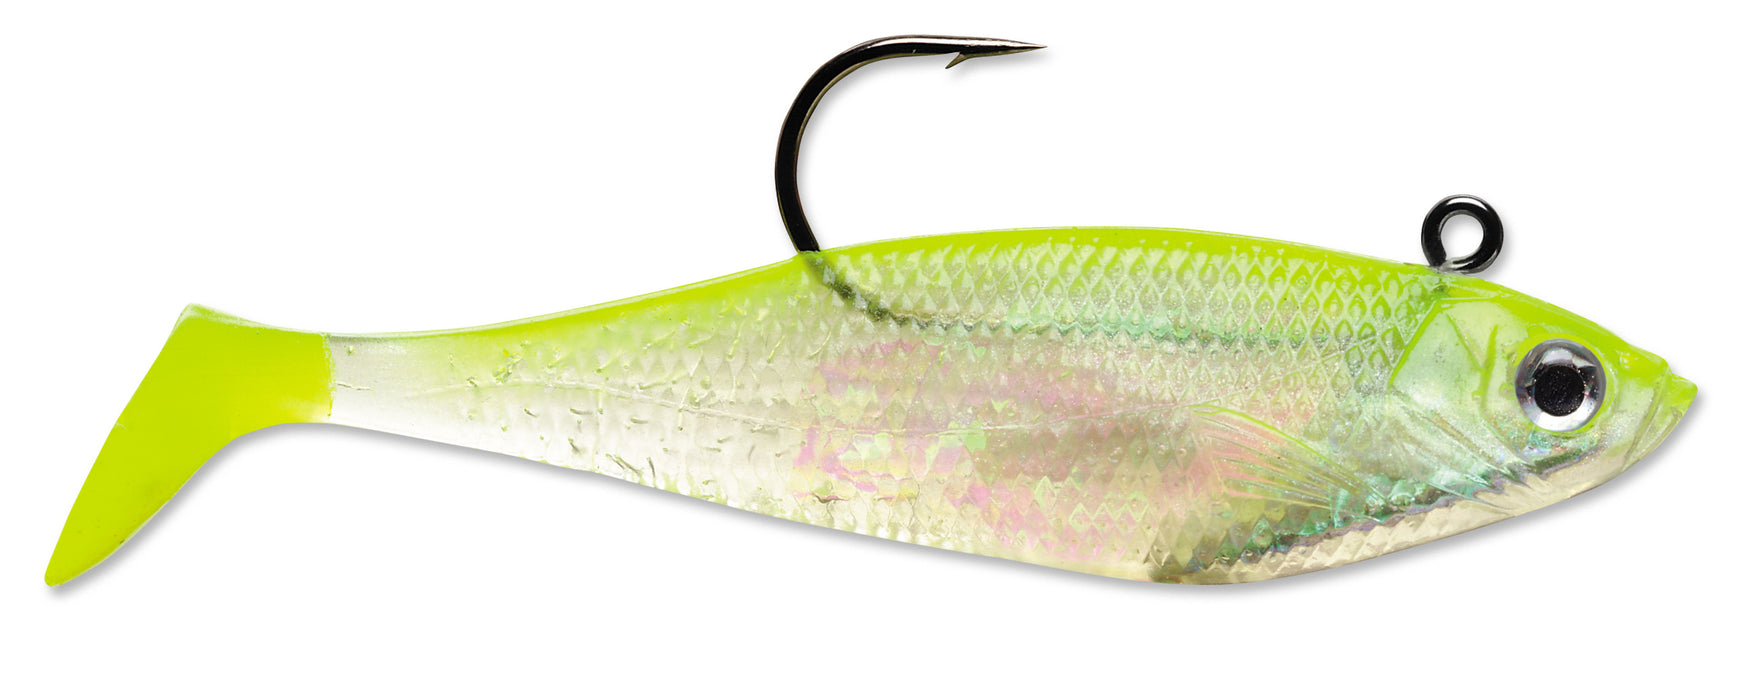 20pcs 2 3/4paddle plastic tail fishing lure two-tone colors swimbait  summer